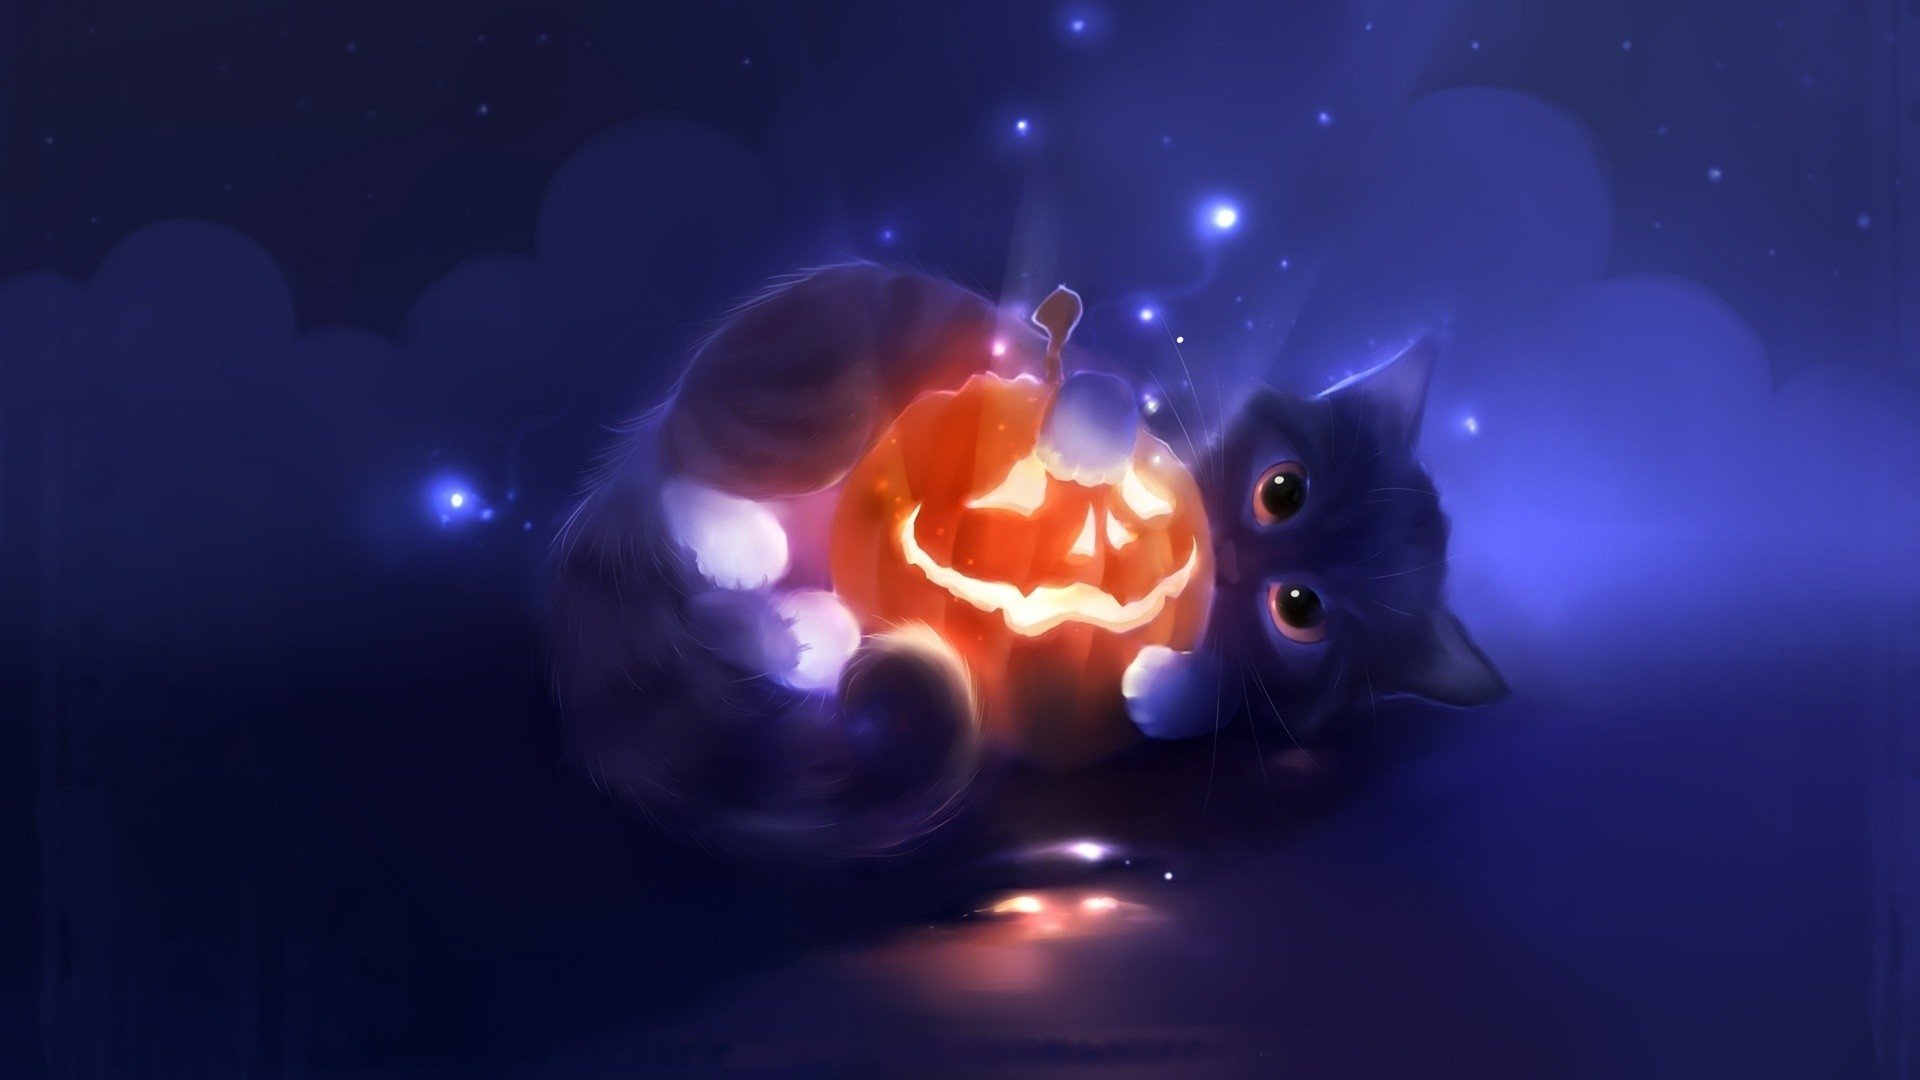 Halloween Desktop Wallpaper Image In Collection